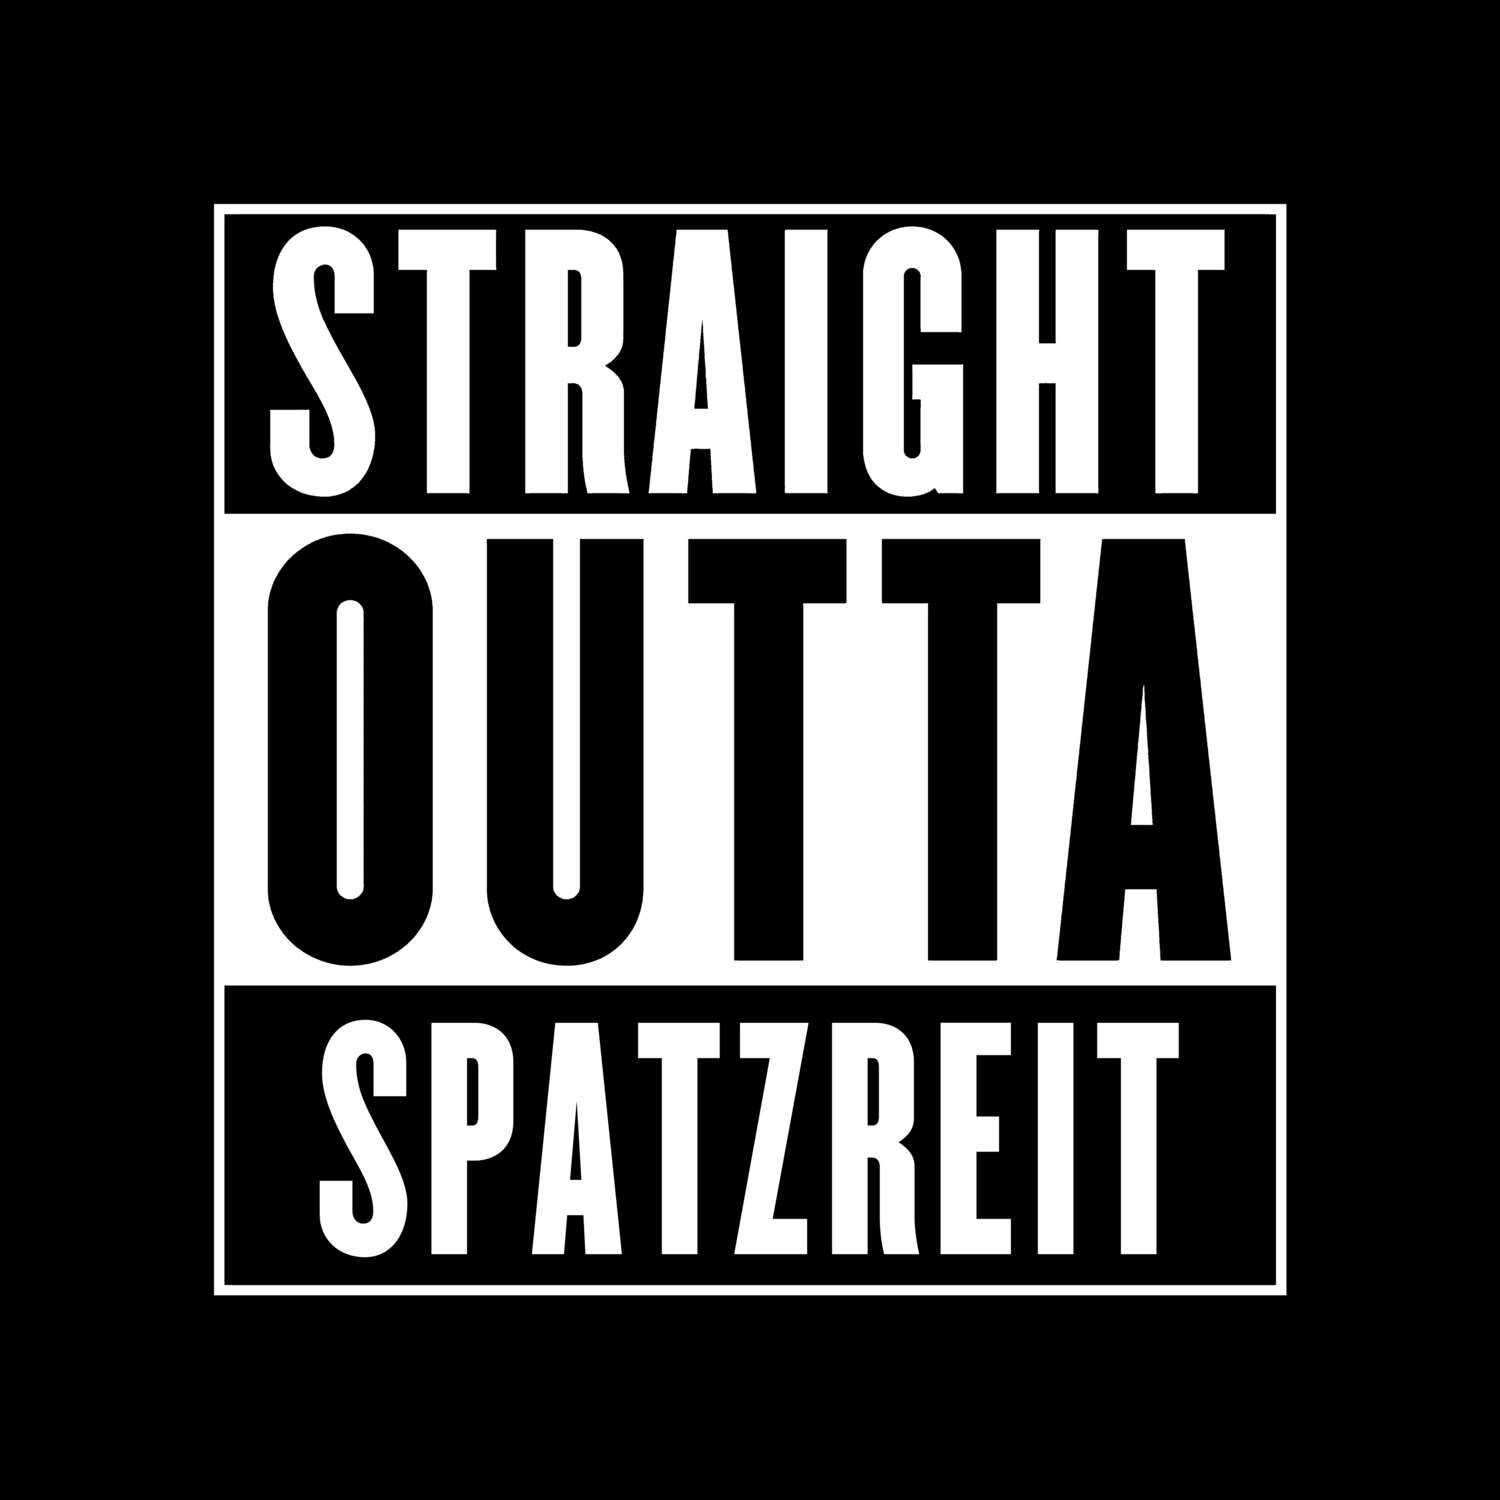 Spatzreit T-Shirt »Straight Outta«